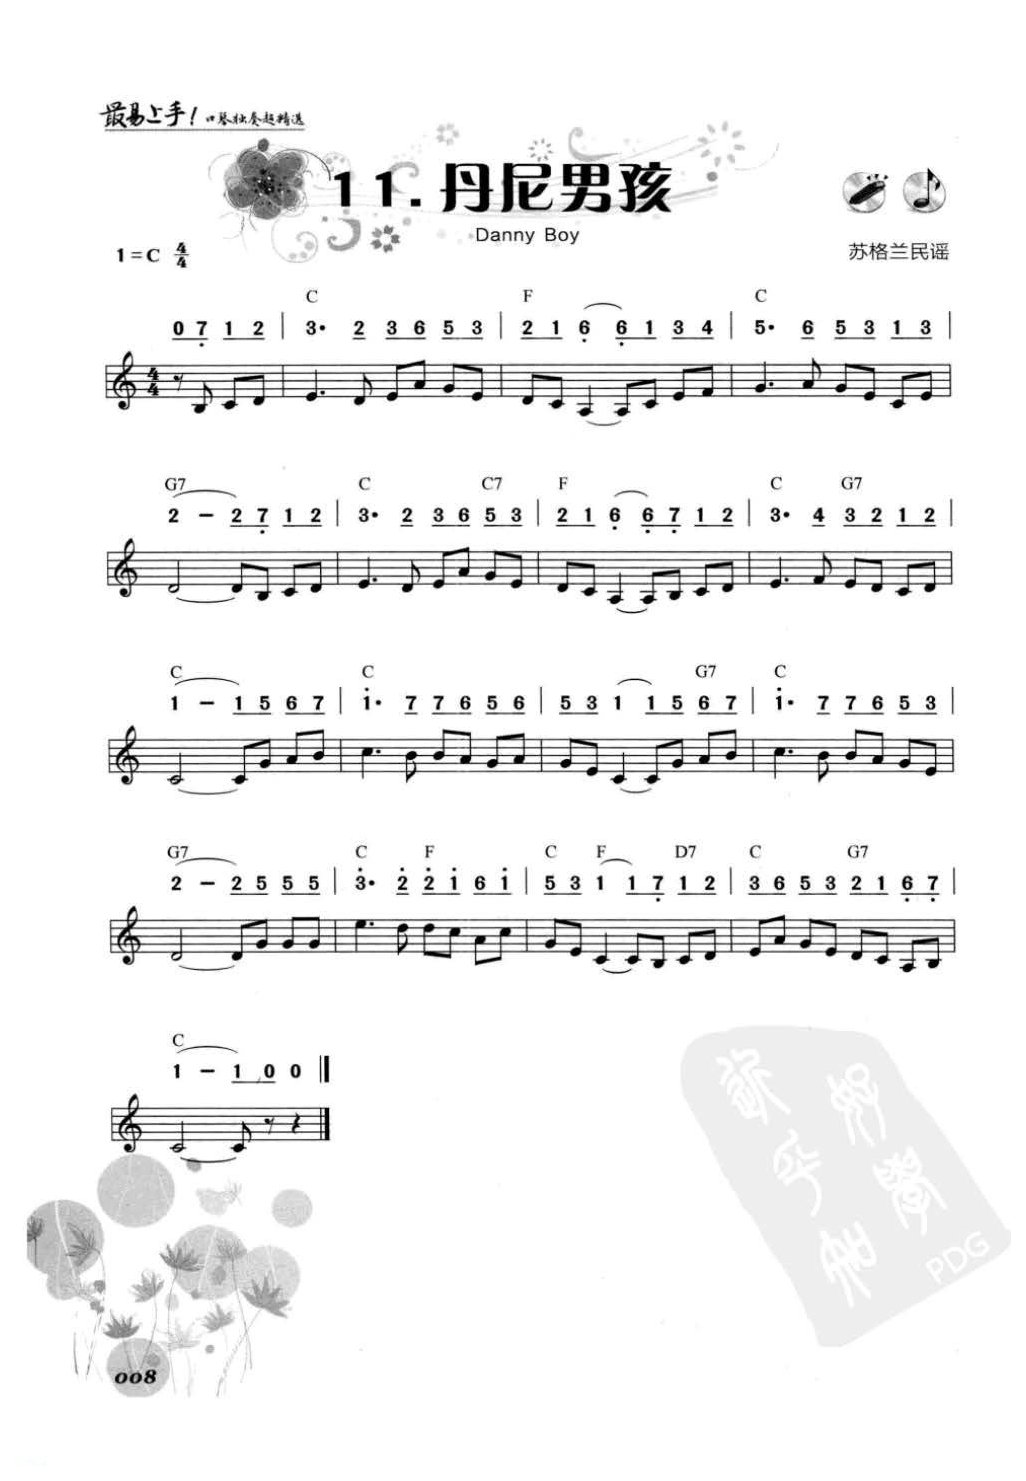 口琴初学者乐曲《丹尼男孩》简谱与五线谱对照